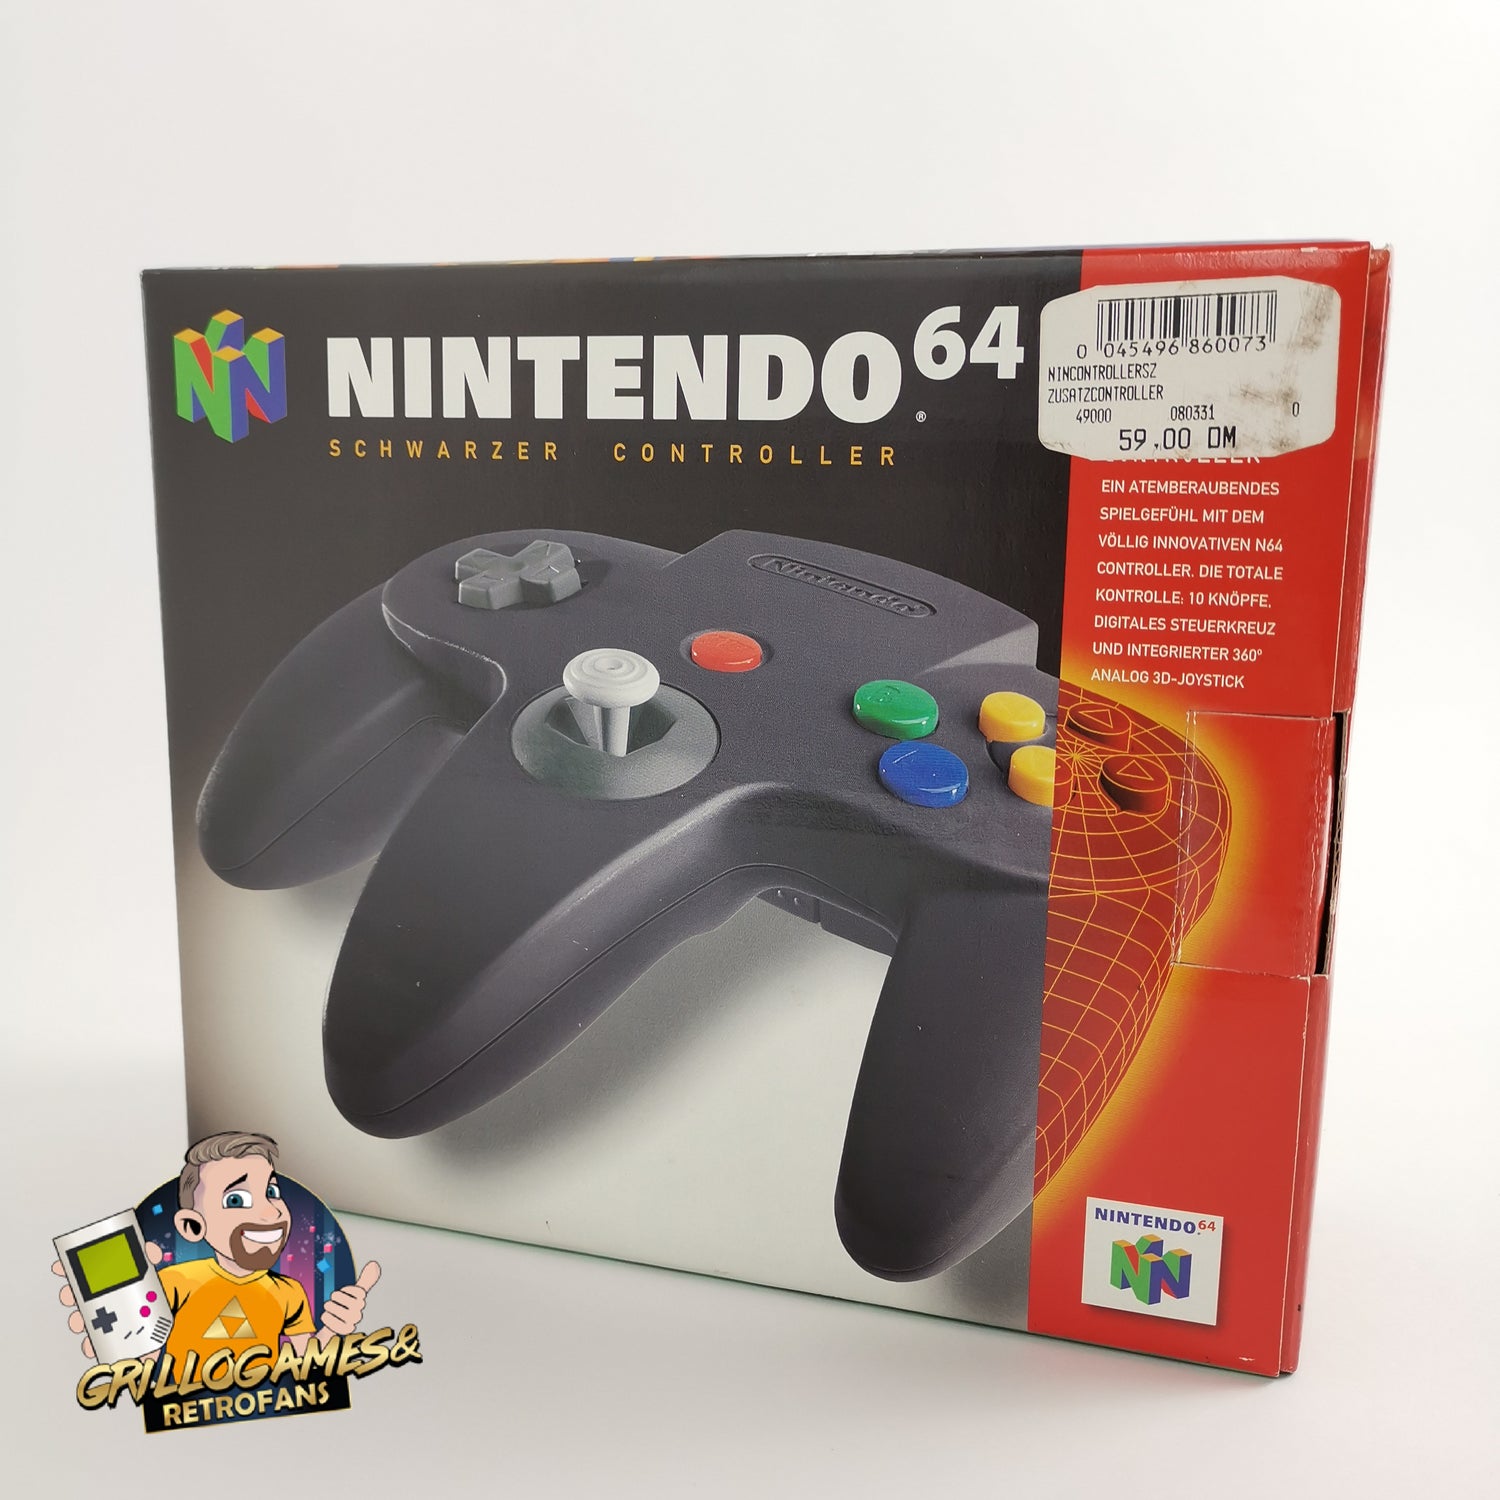 Nintendo 64 accessories: N64 controller black in original packaging N 64 PAL - Gamepad Joypad